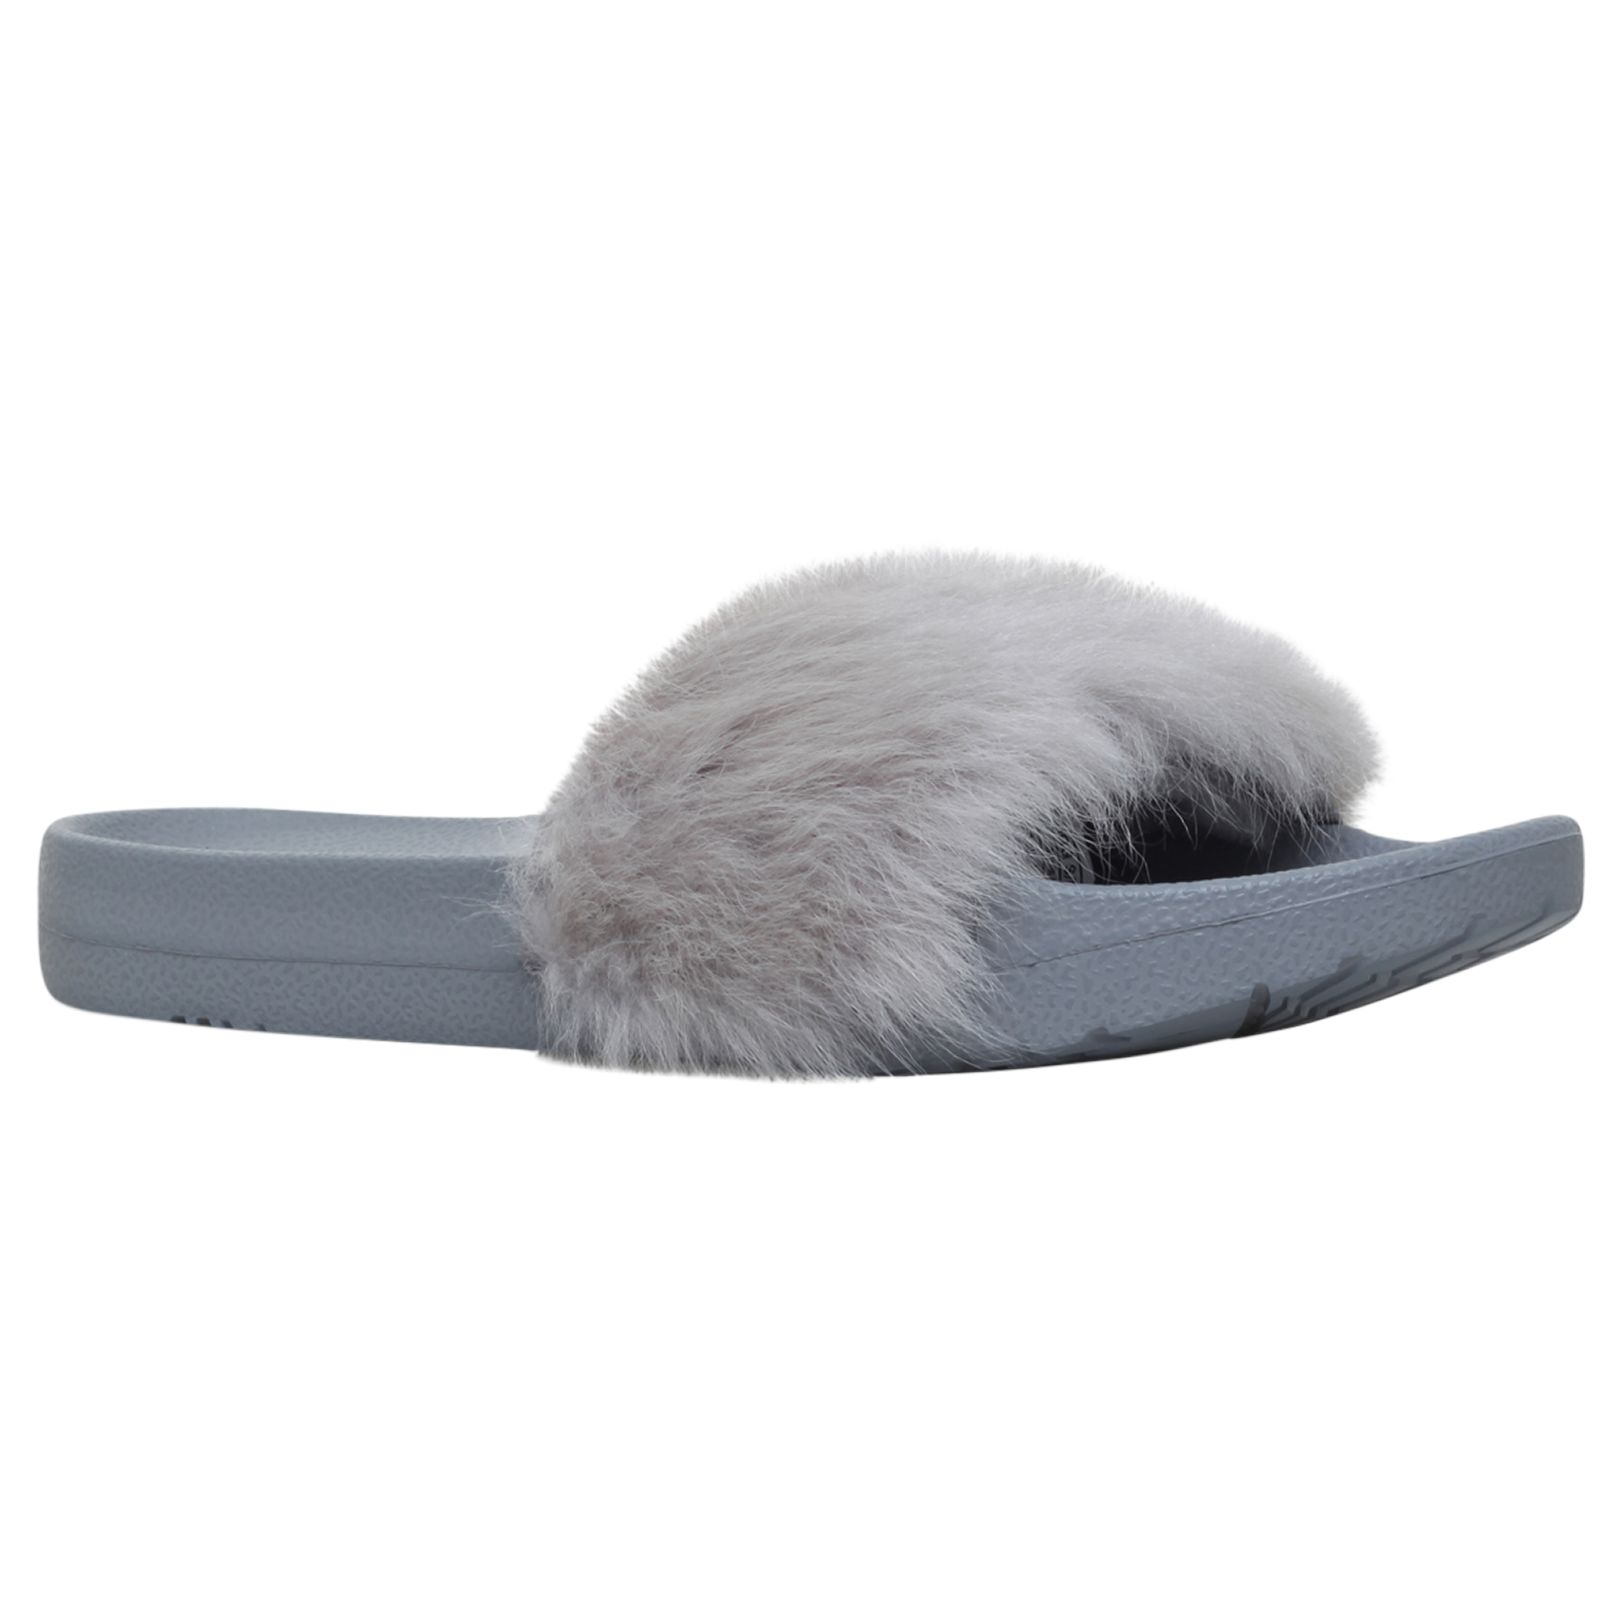 UGG Royale Sheepskin Slider Sandals, Grey, 5